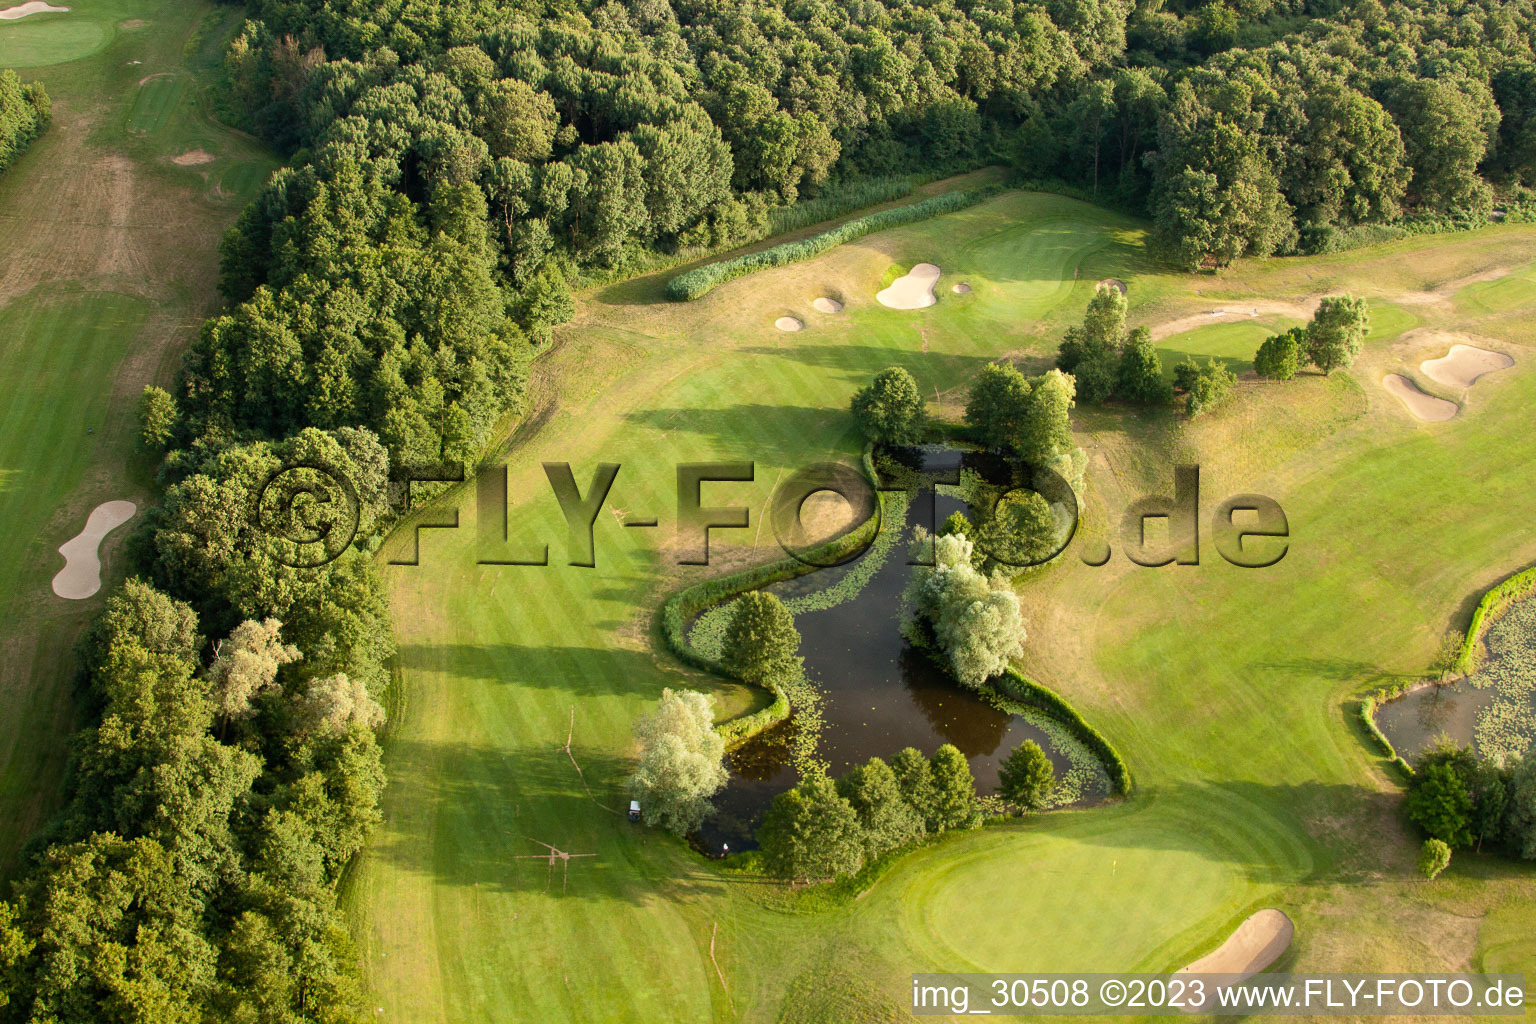 Club de golf Soufflenheim Baden-Baden à Soufflenheim dans le département Bas Rhin, France hors des airs